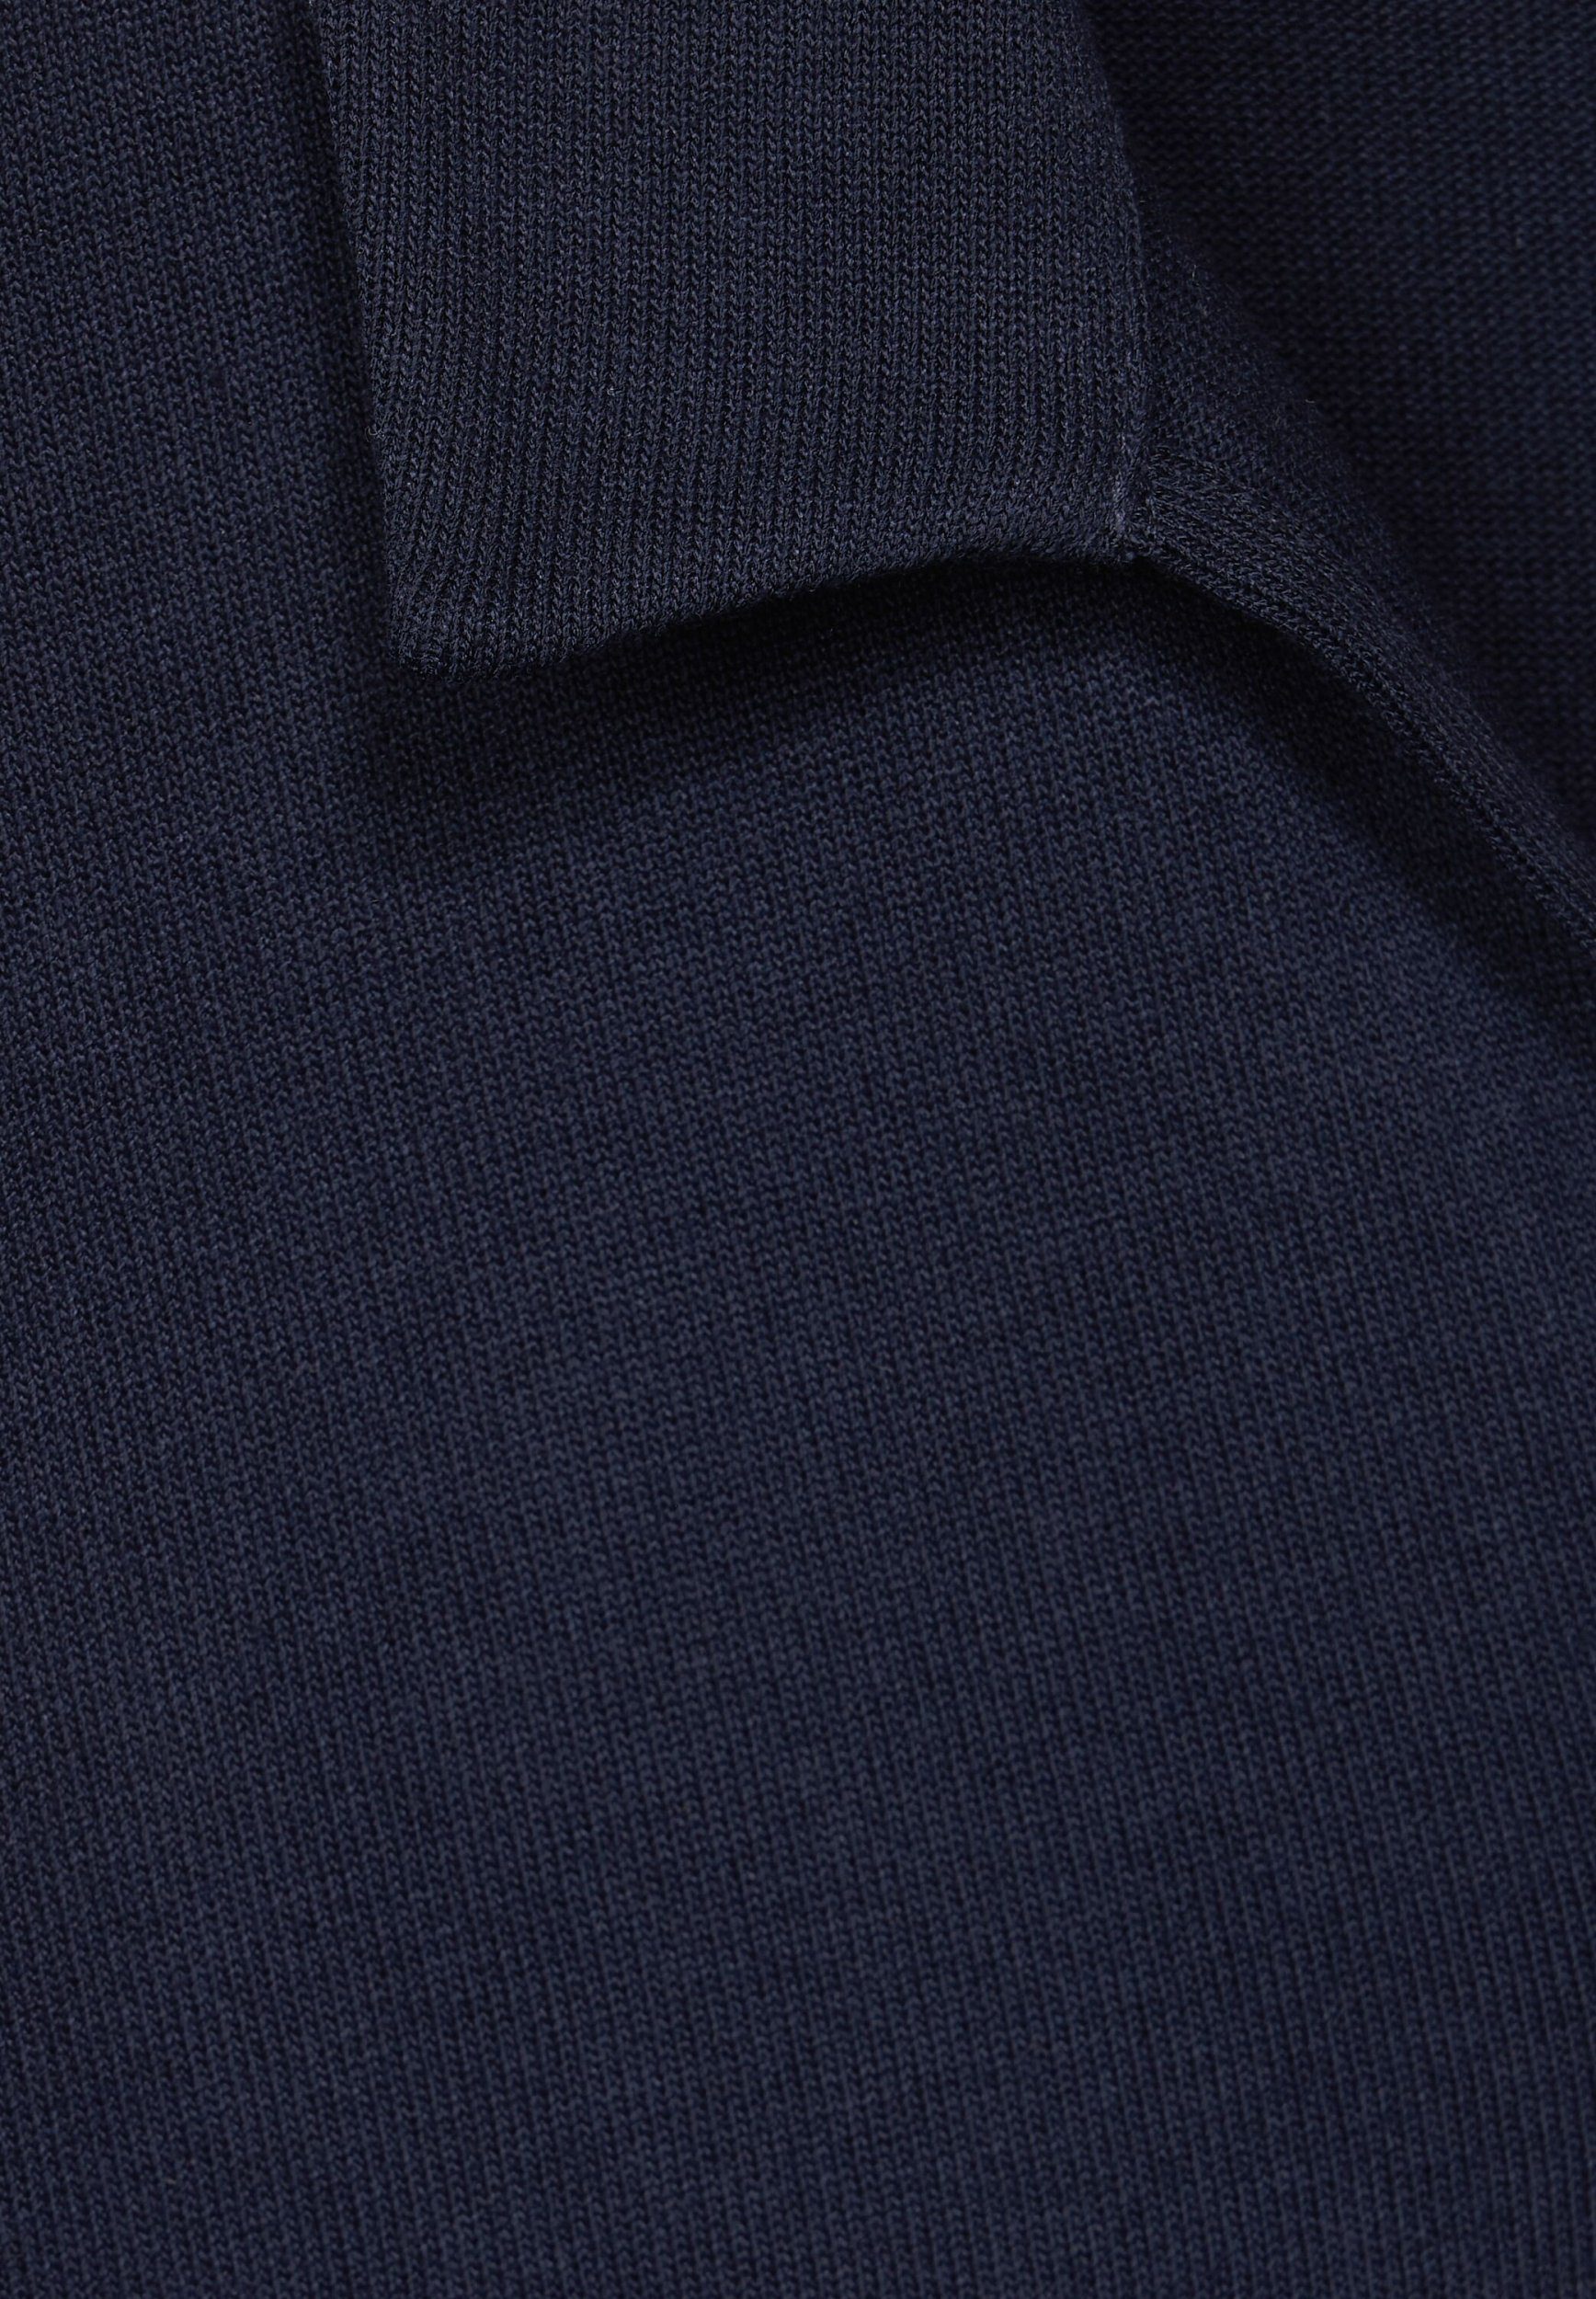 polo ONE look shirt STREET Kurzarmshirt knit deep blue